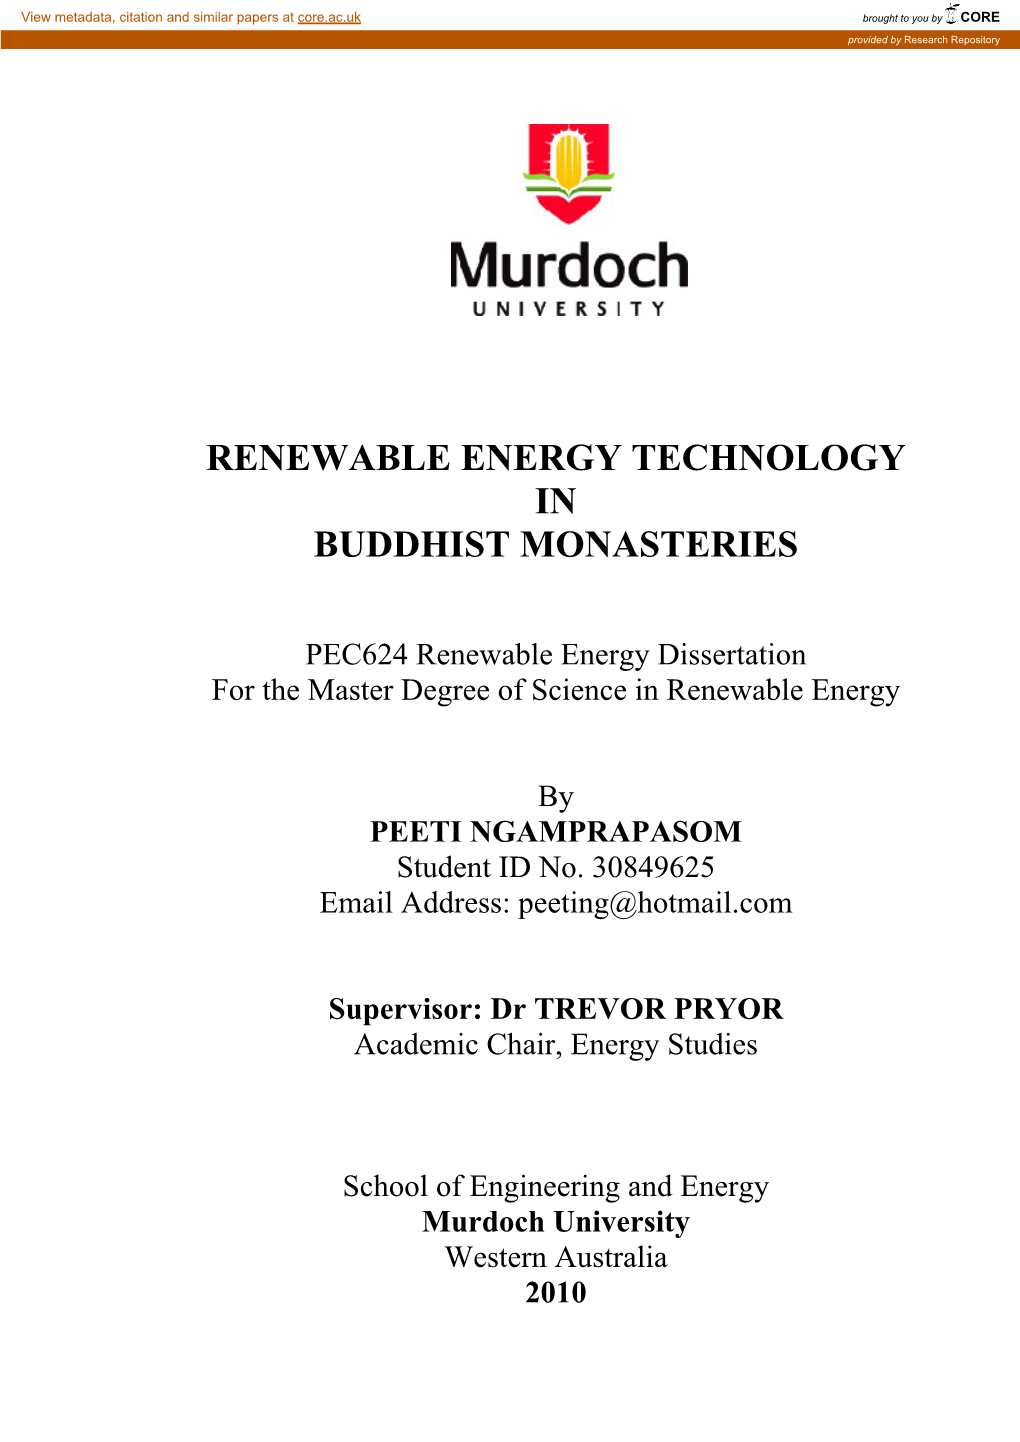 Renewable Energy Technology in Buddhist Monasteries